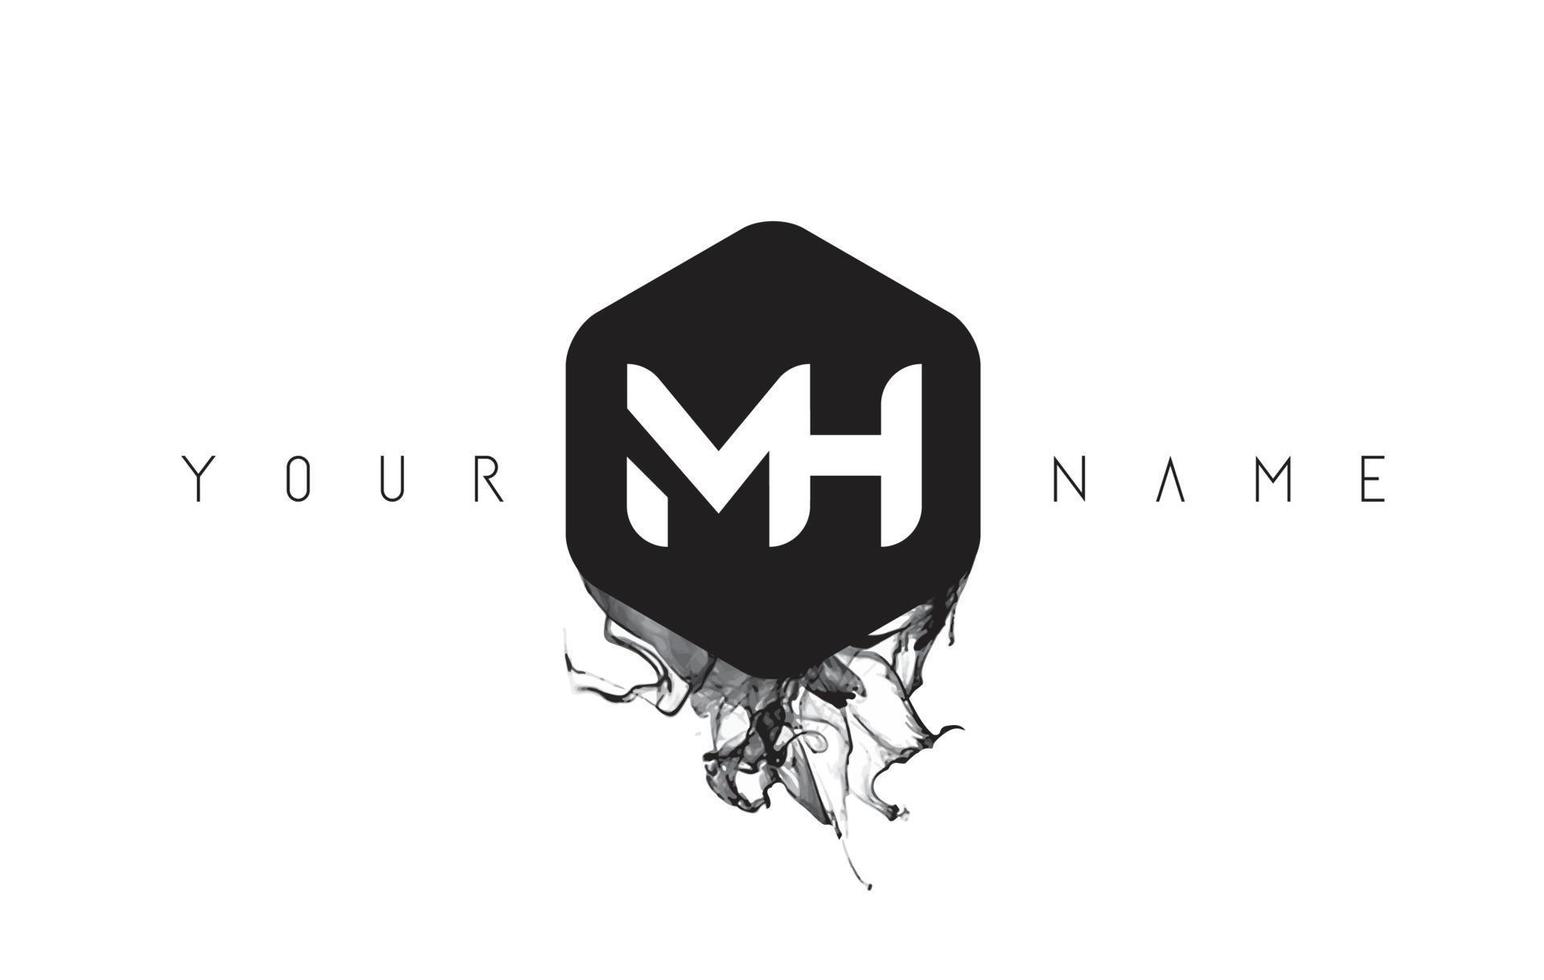 mh-Brief-Logo-Design mit verschütteter schwarzer Tinte vektor